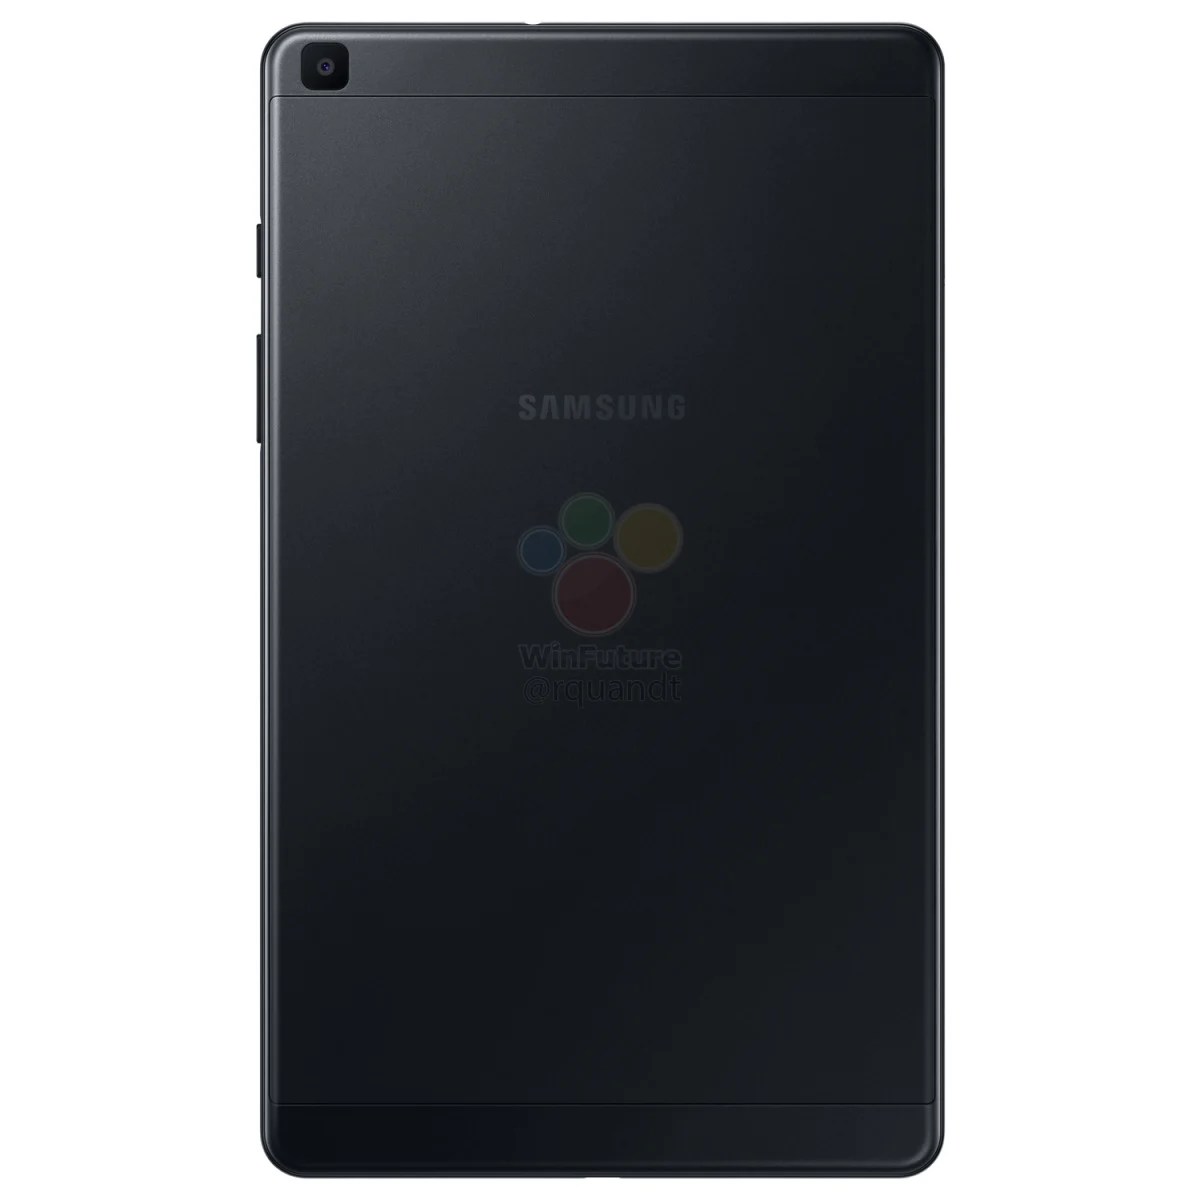 Samsung-Galaxy-Tab-A-8-2019-1562056643-0-0 (1)